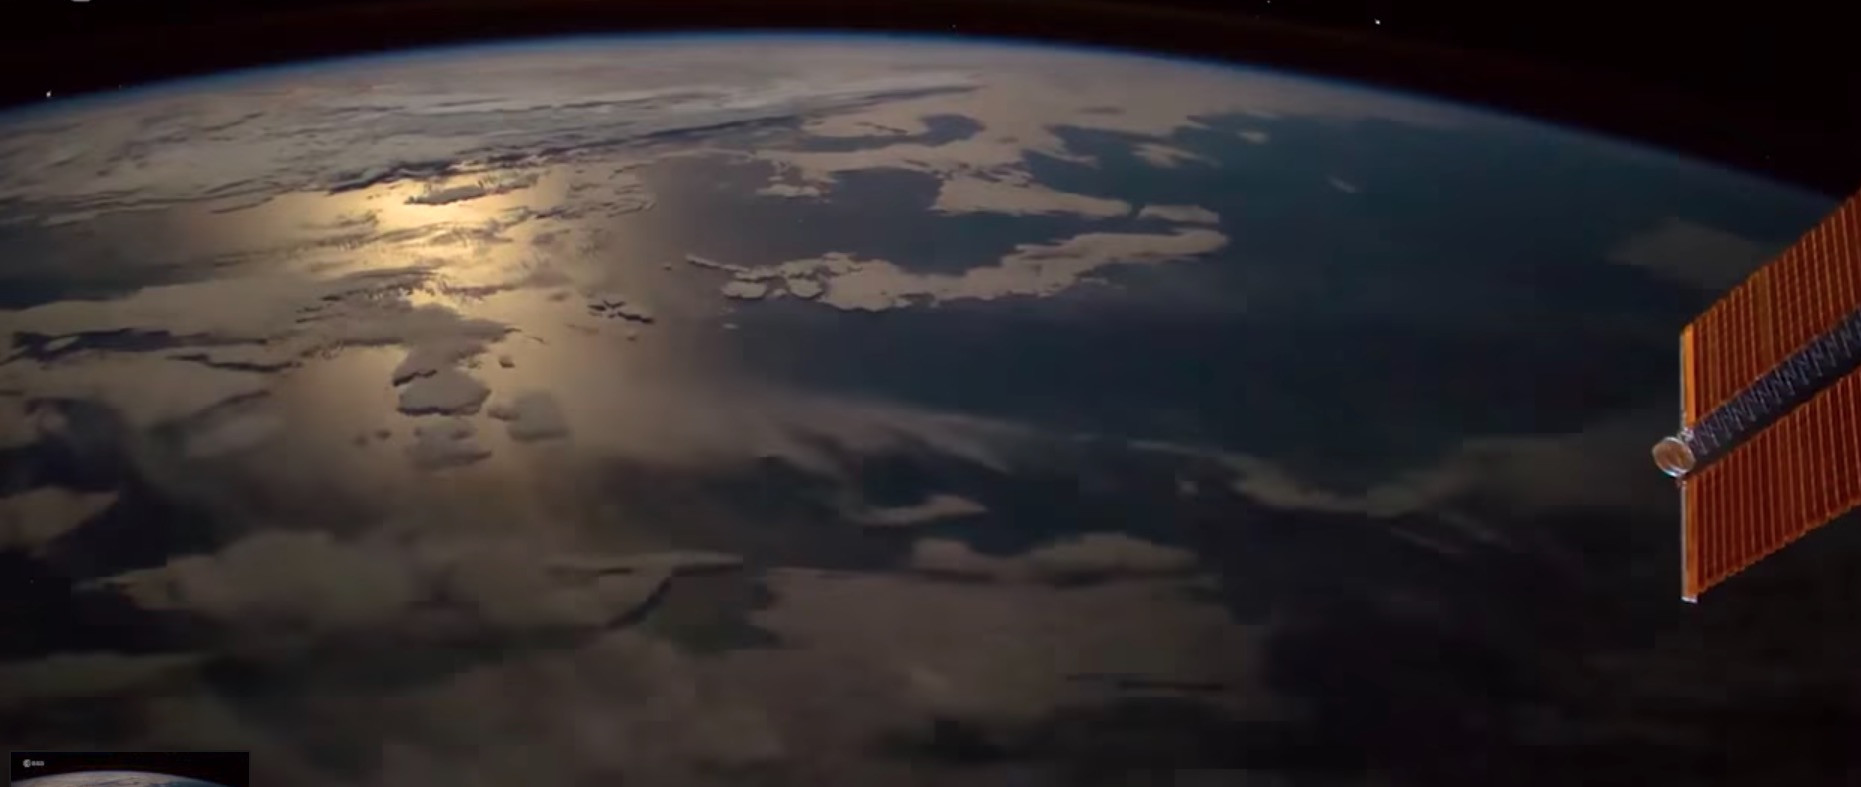 Αστροναύτης βιντεοσκοπεί μετεωρίτη την ώρα που εισέρχεται στην γήινη ατμόσφαιρα